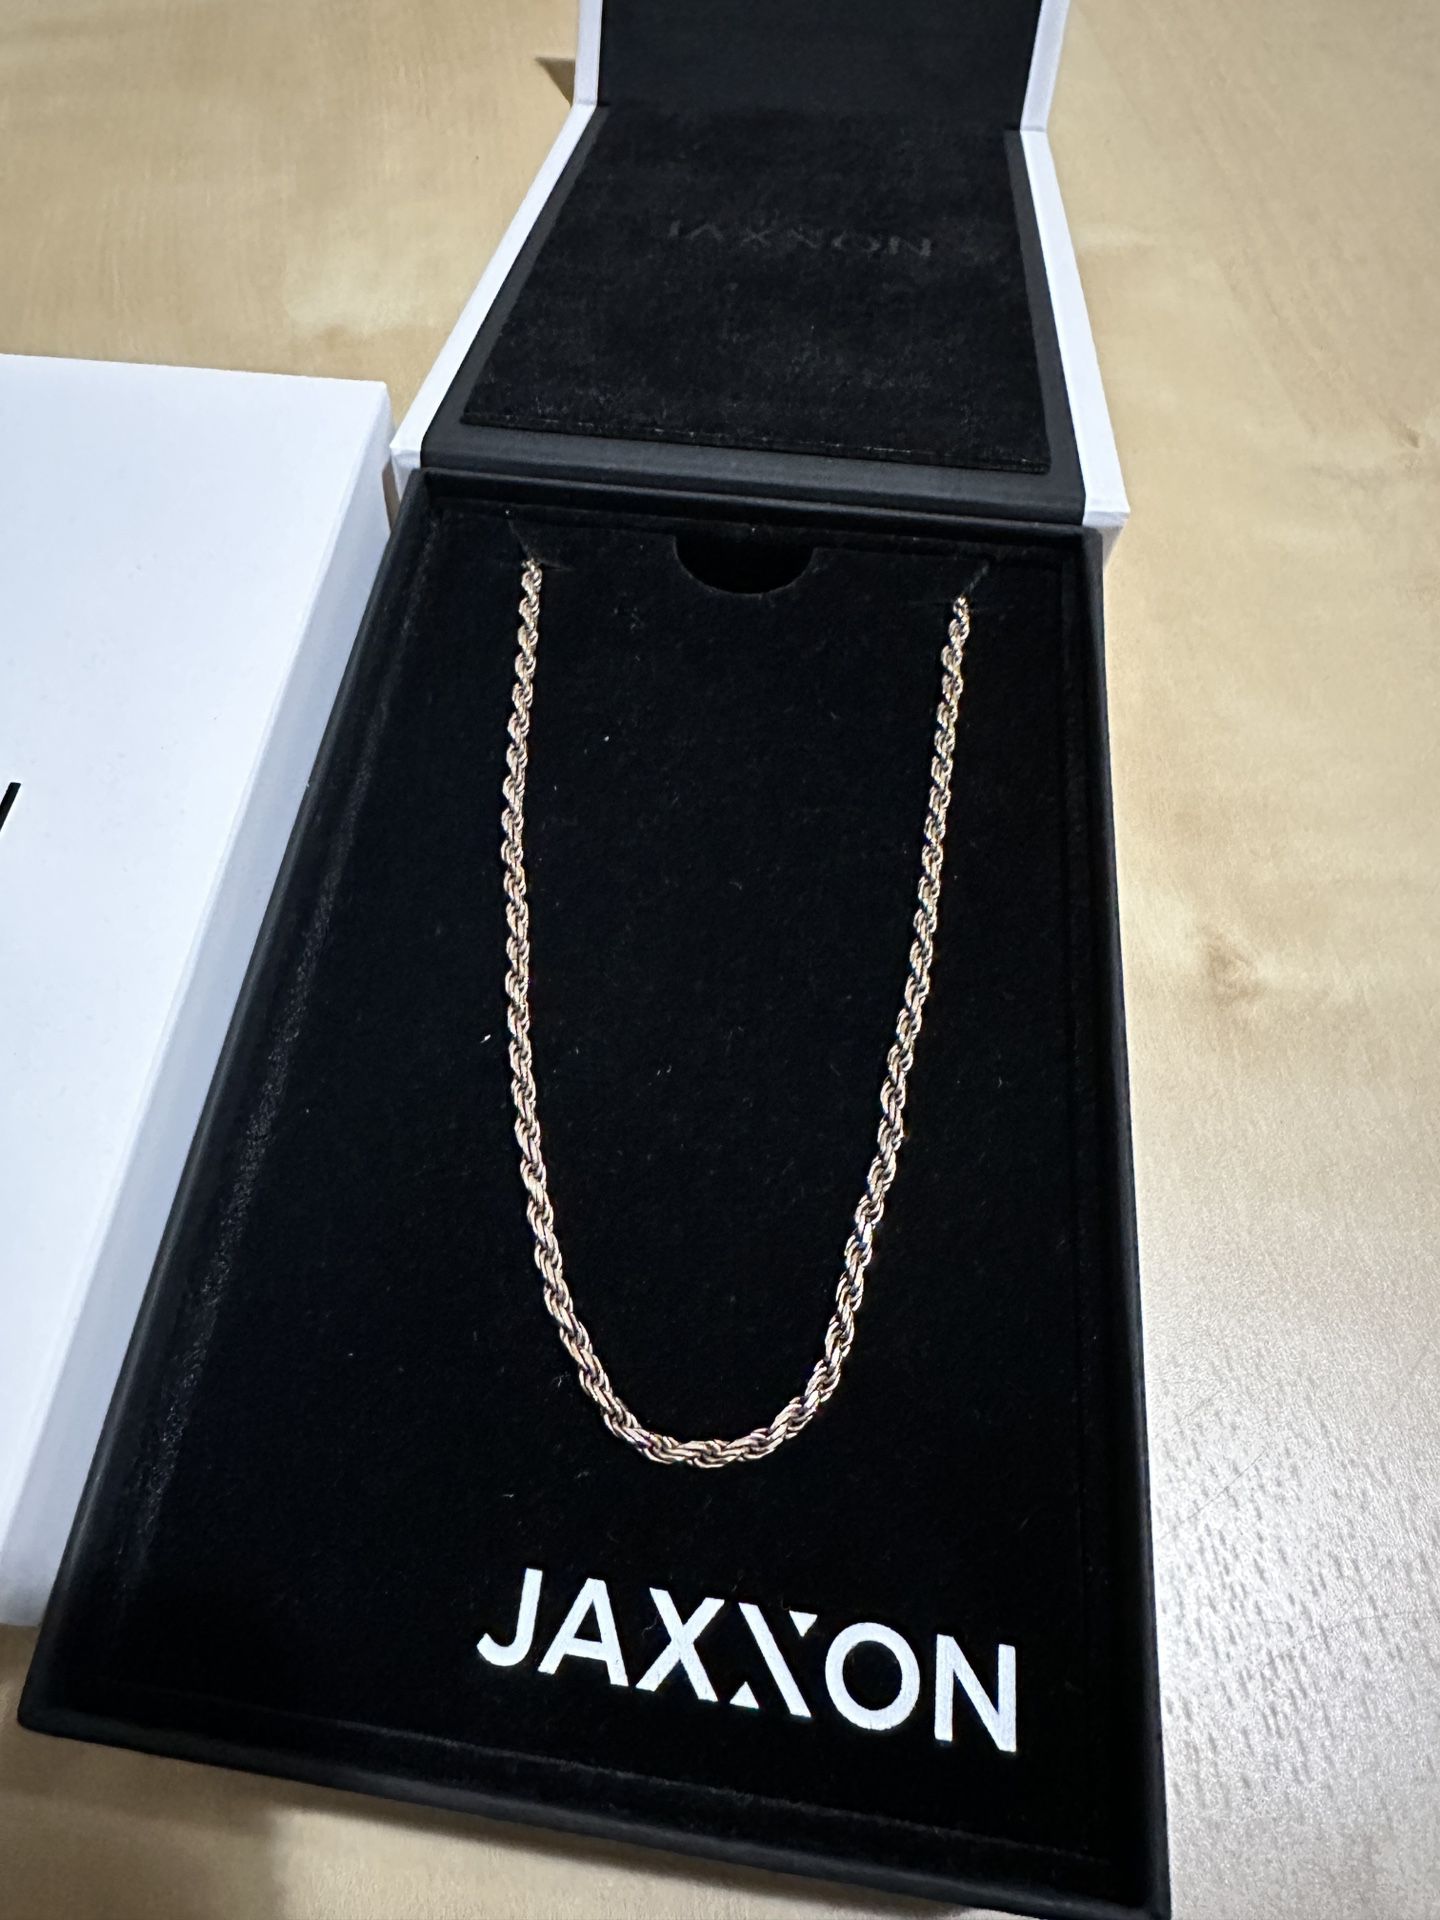 Jaxxon Rope Chain